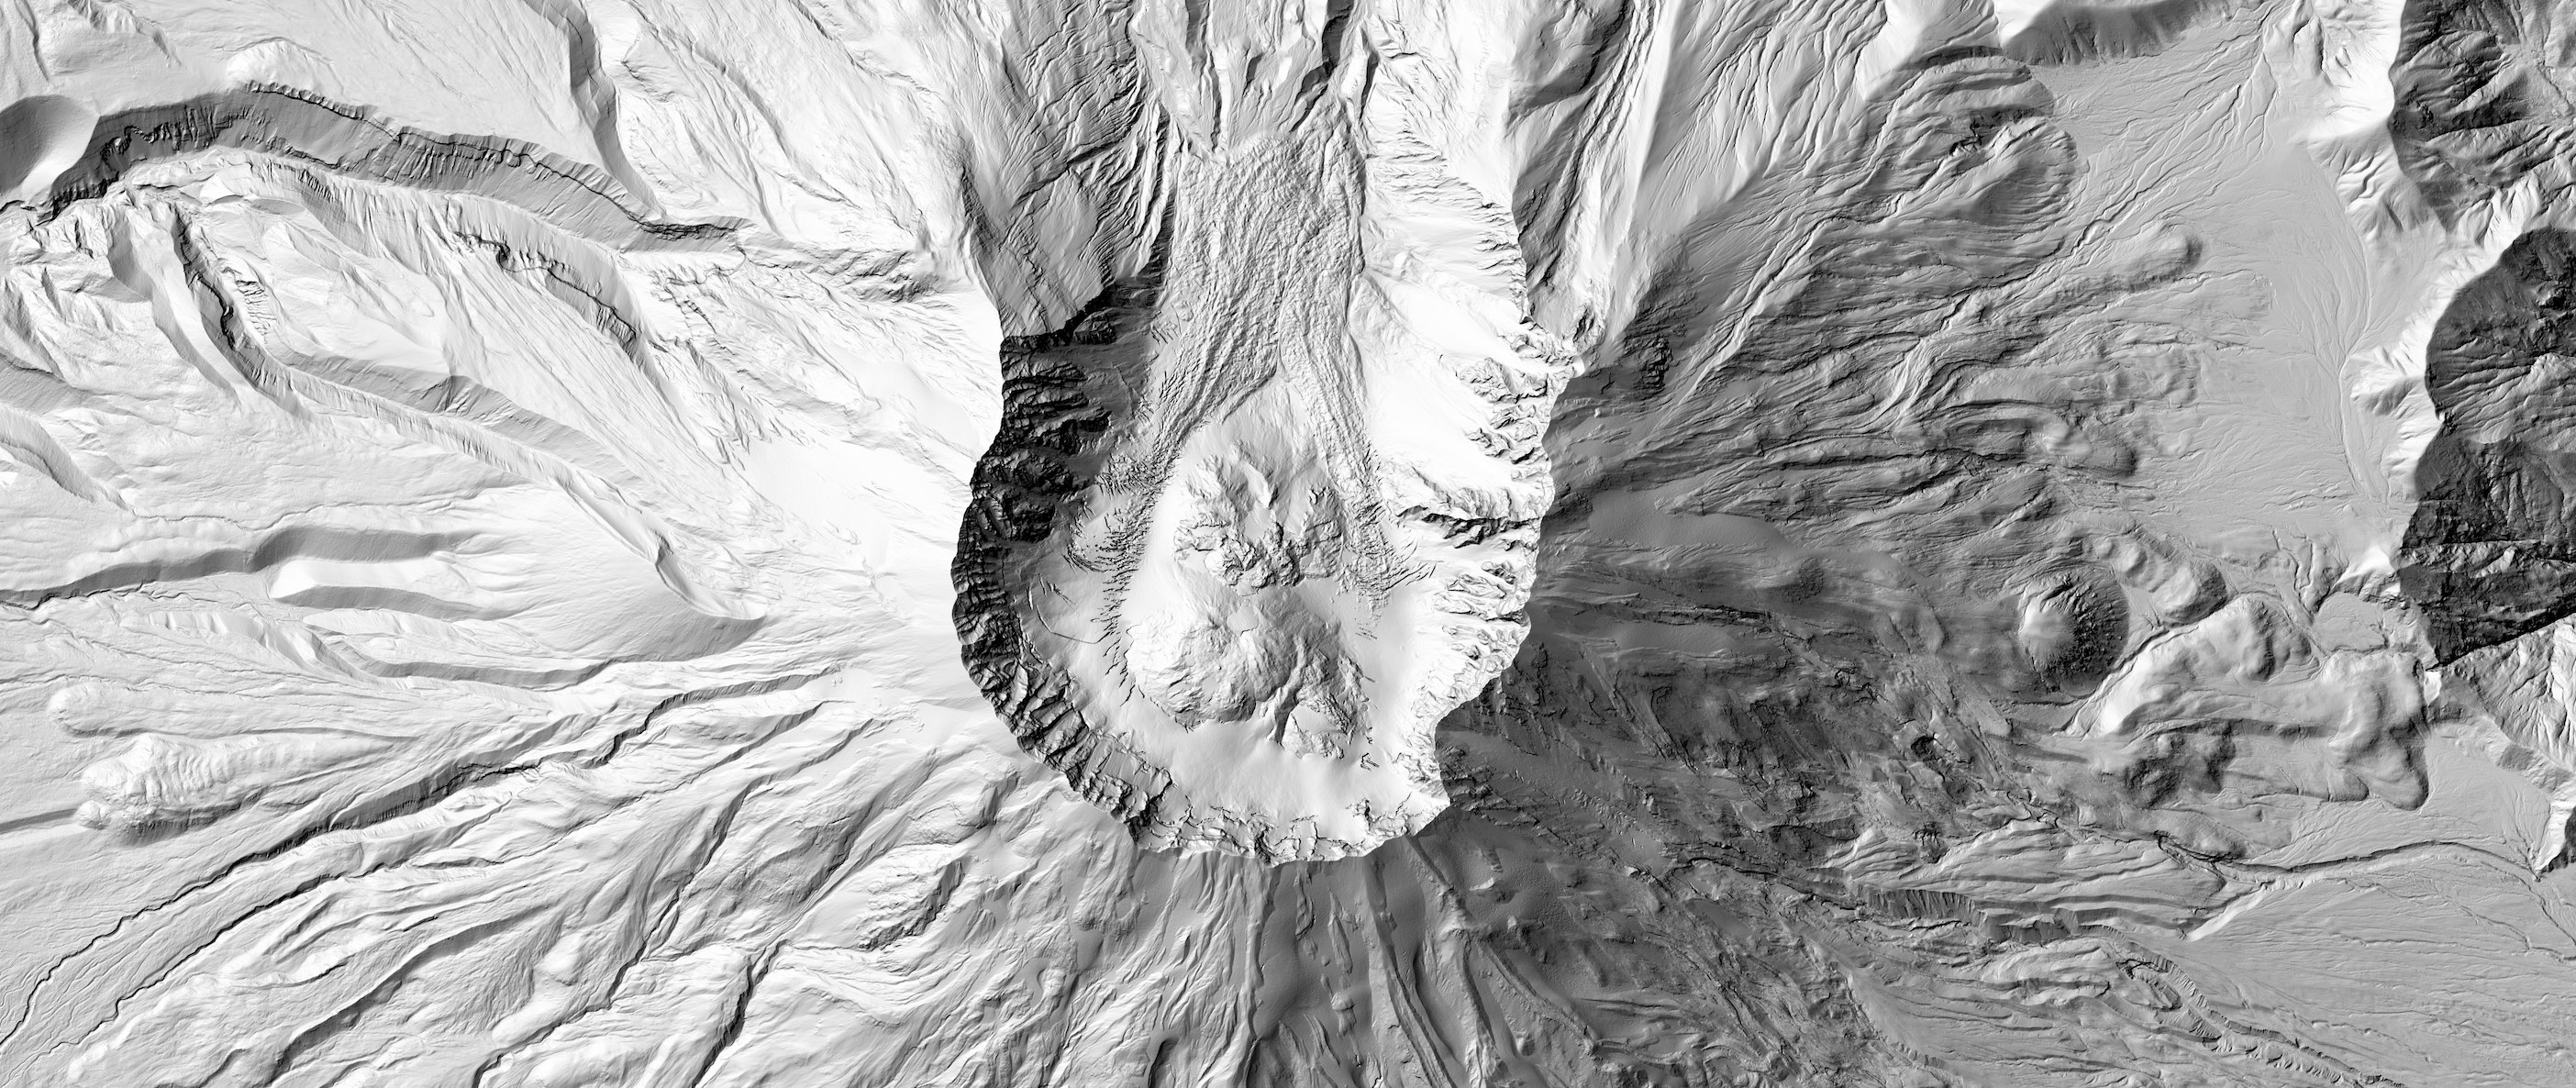 Mount St. Helens hillshade